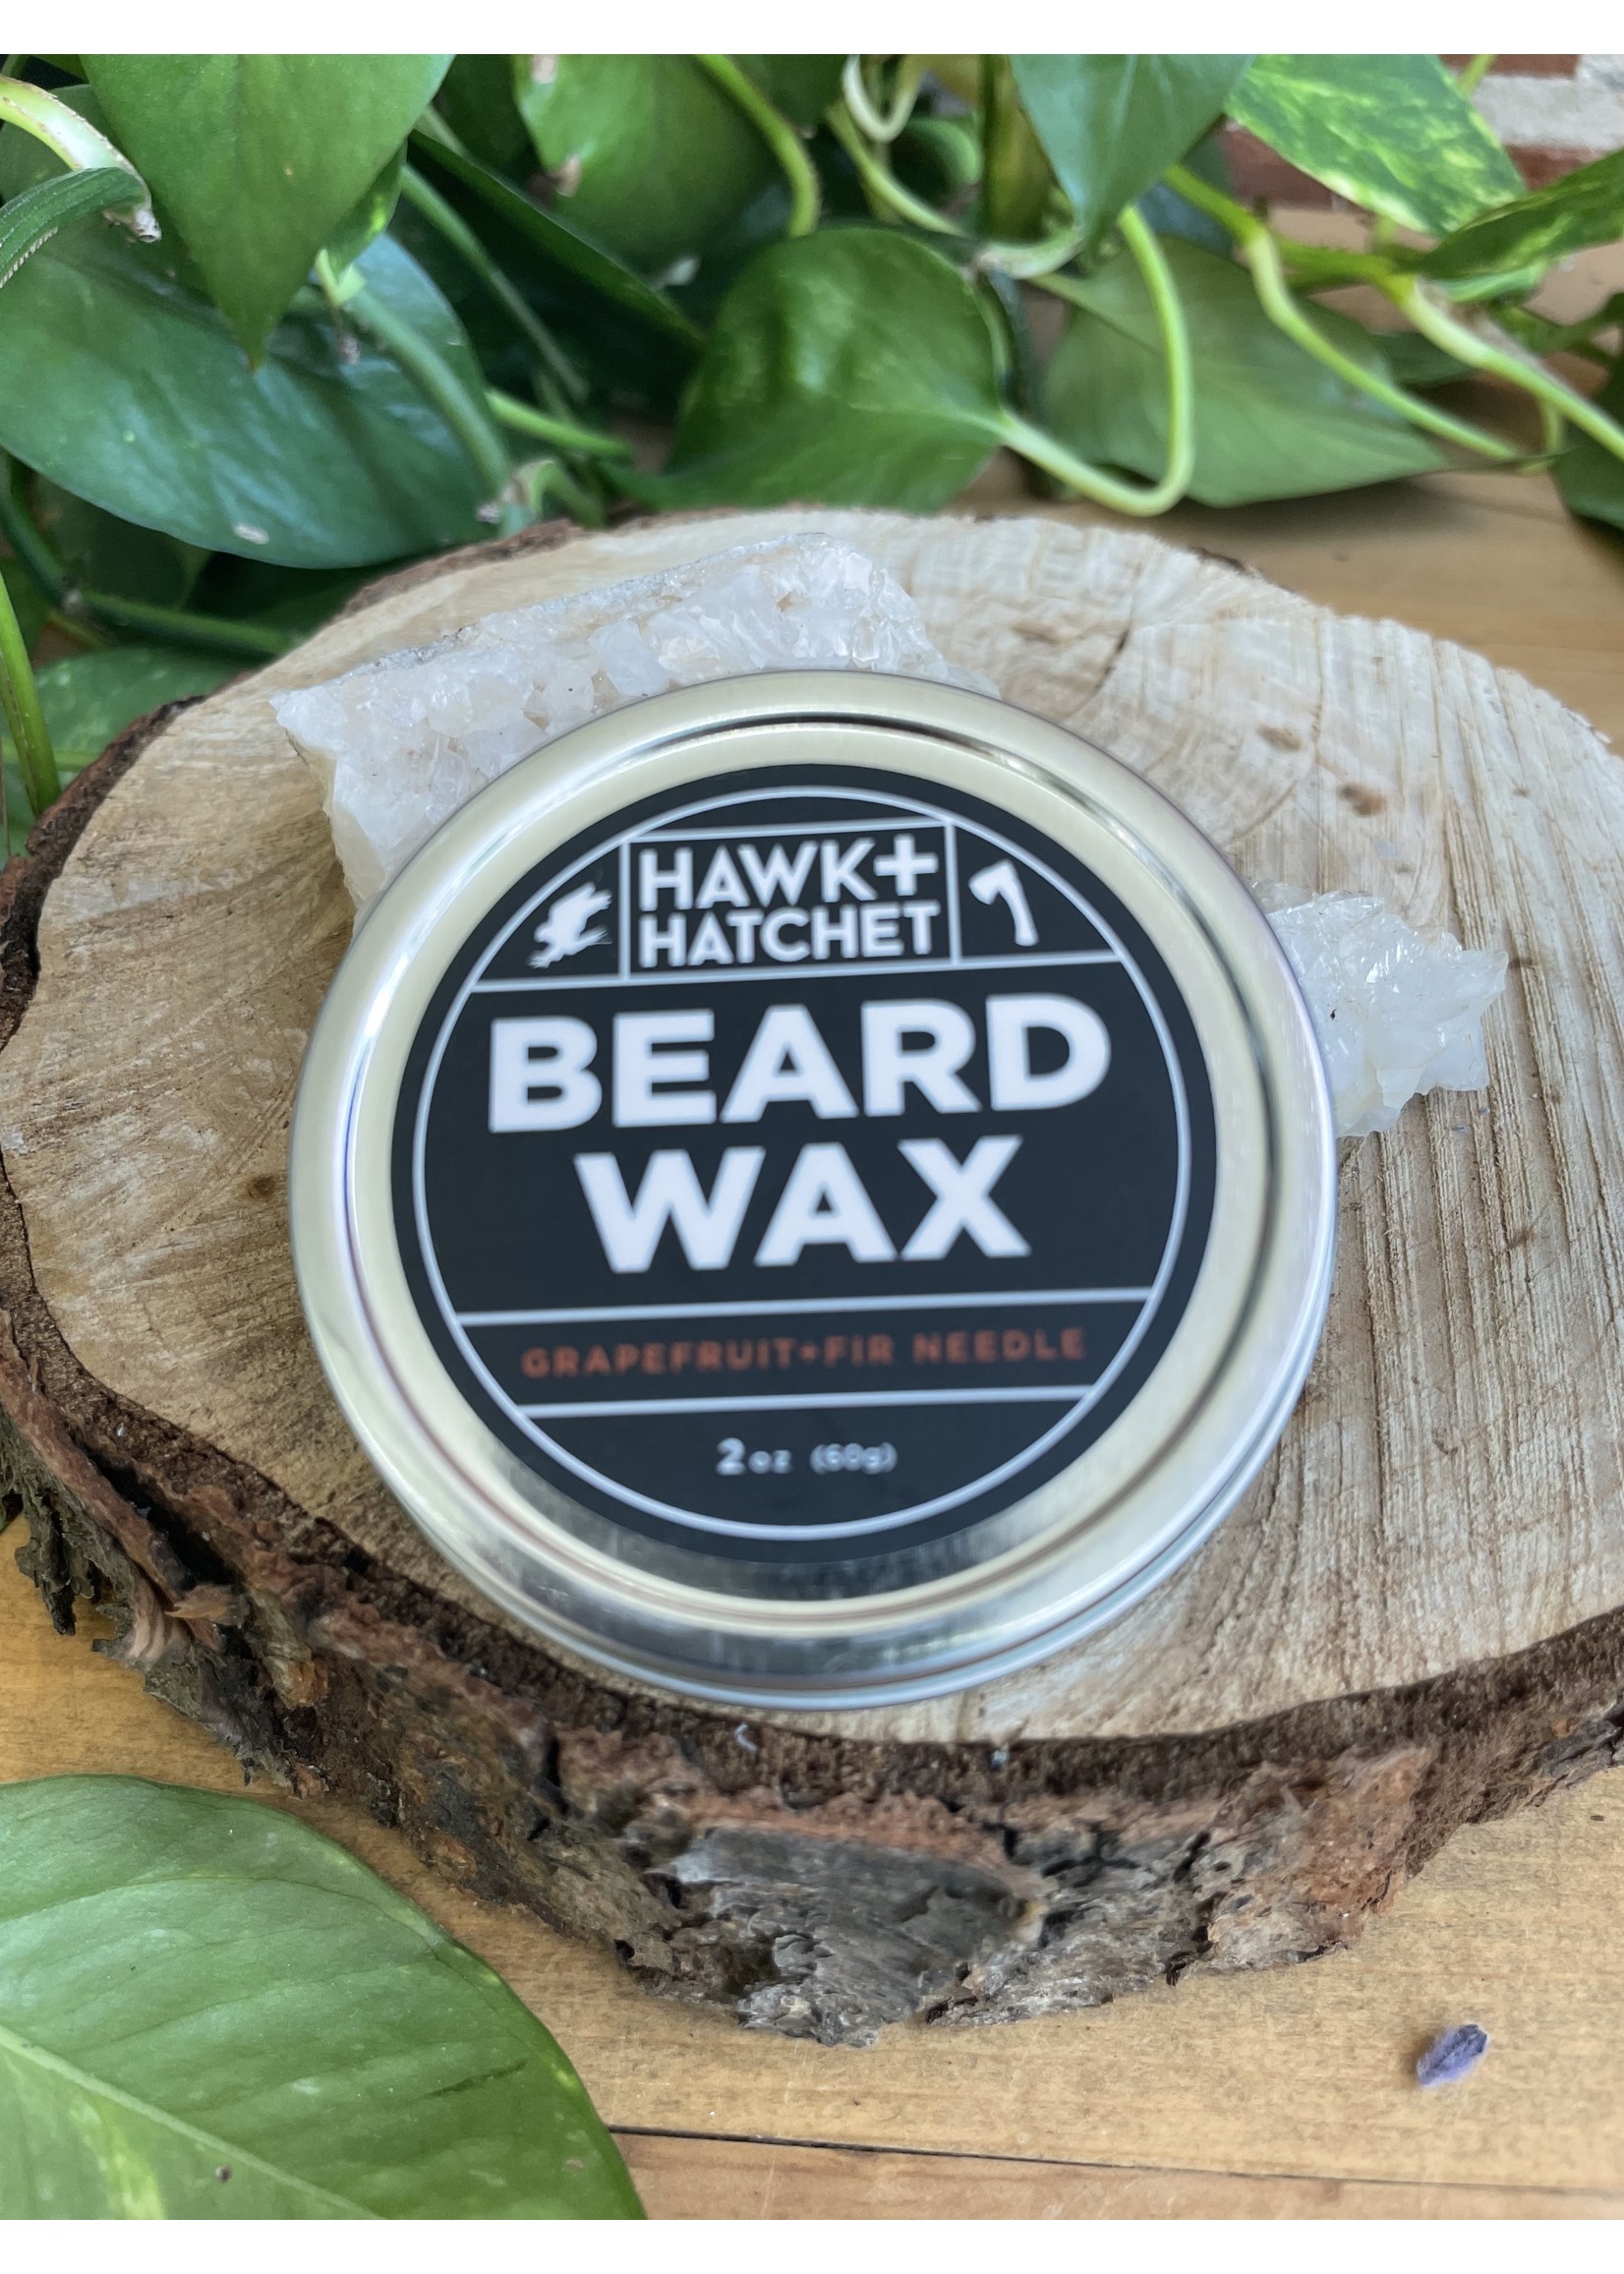 Hawk + Hatchet: Beard Wax